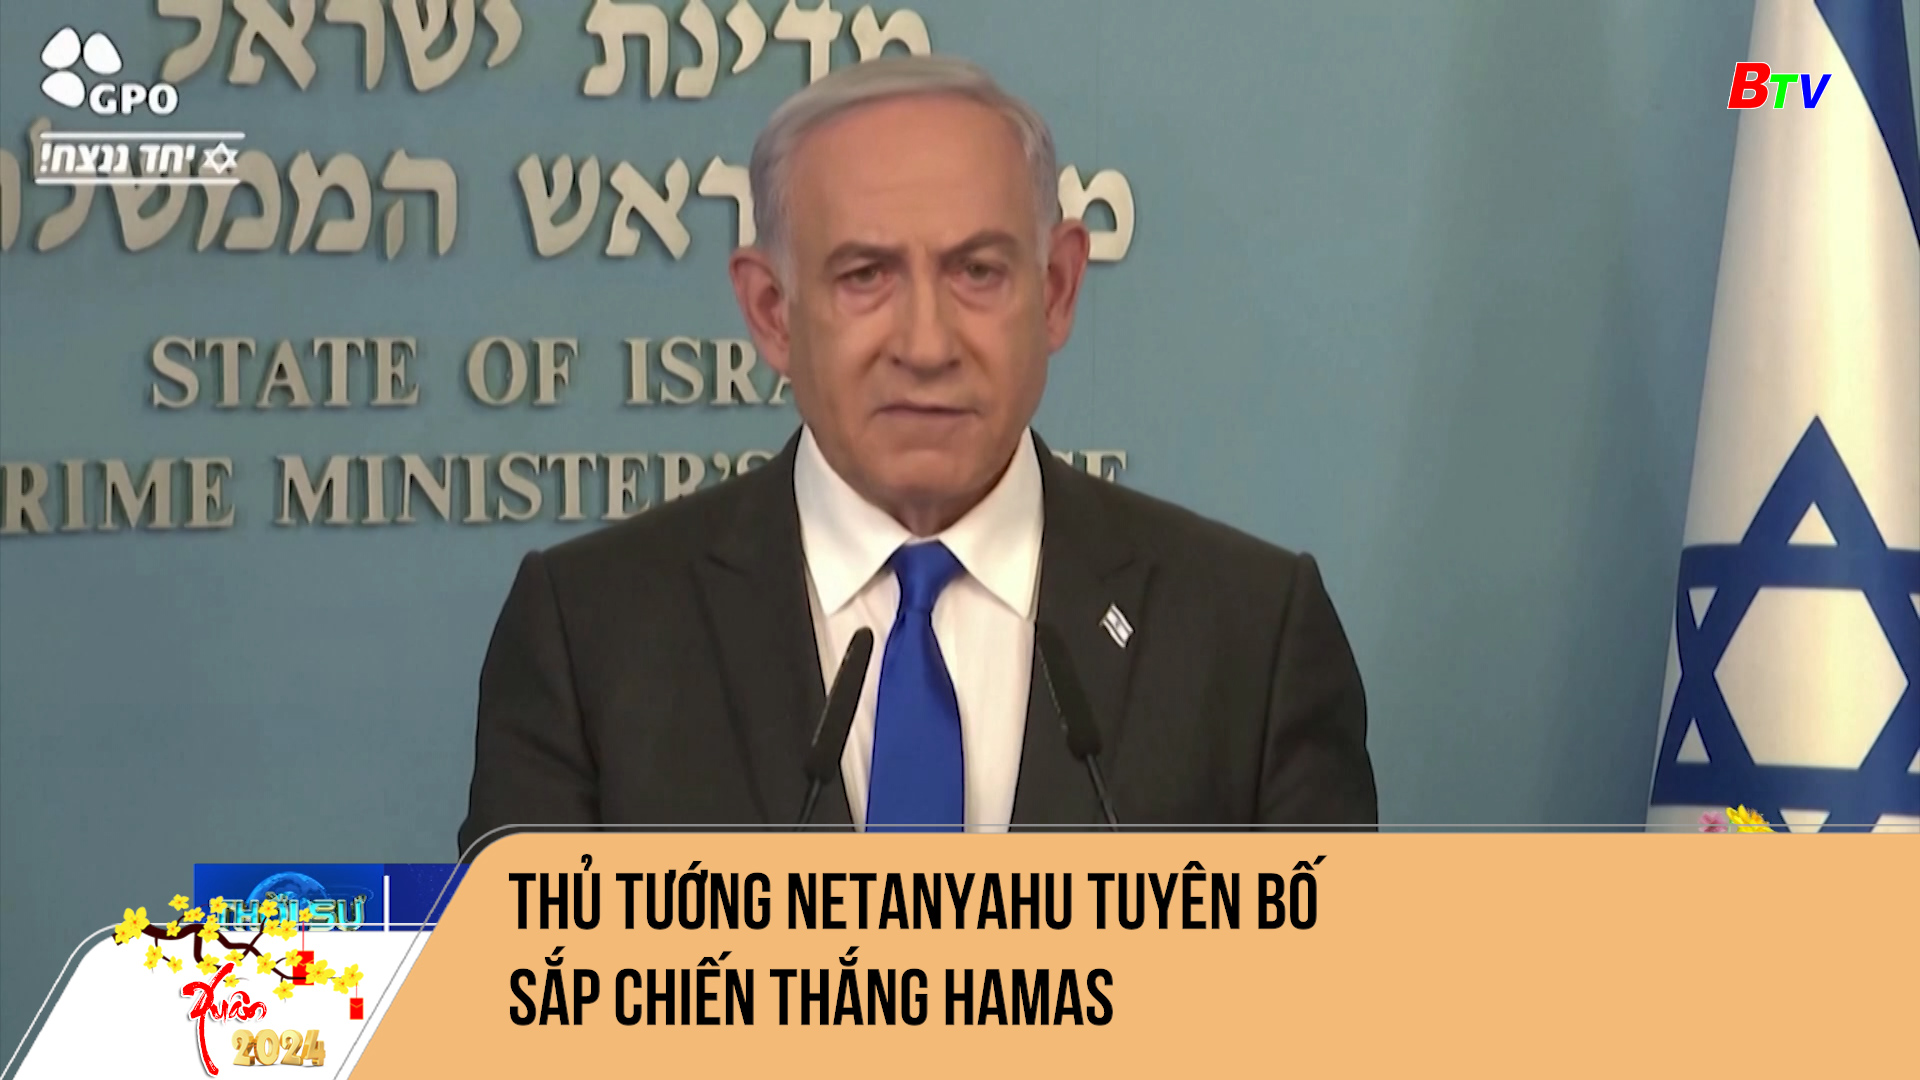 Thủ tướng Netanyahu tuyên bố sắp chiến thắng Hamas